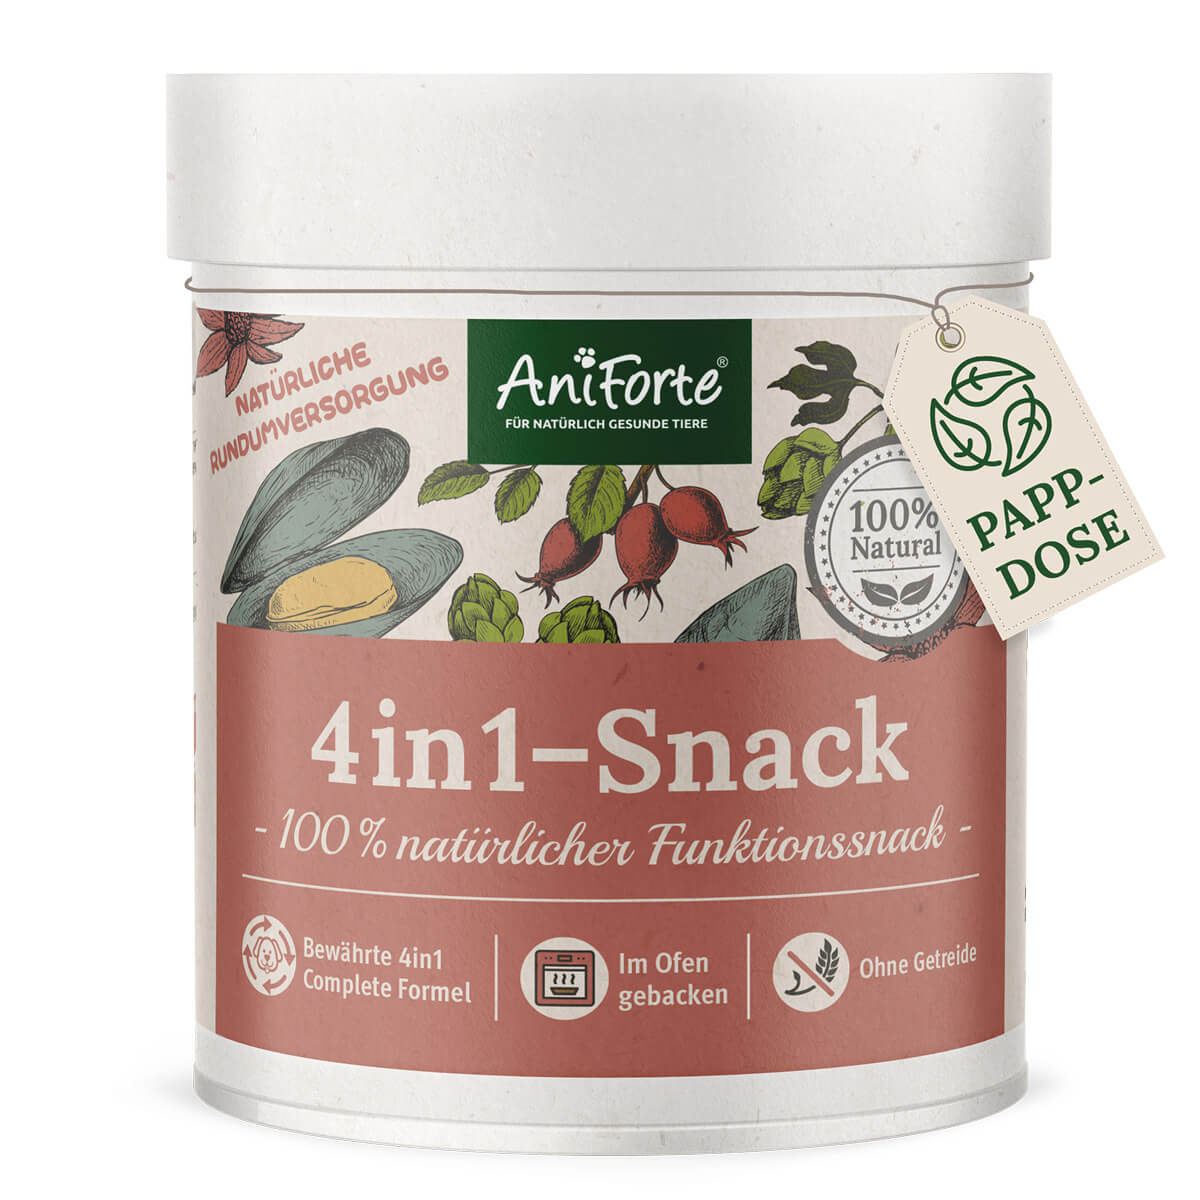 4in1-Snack - AniForte